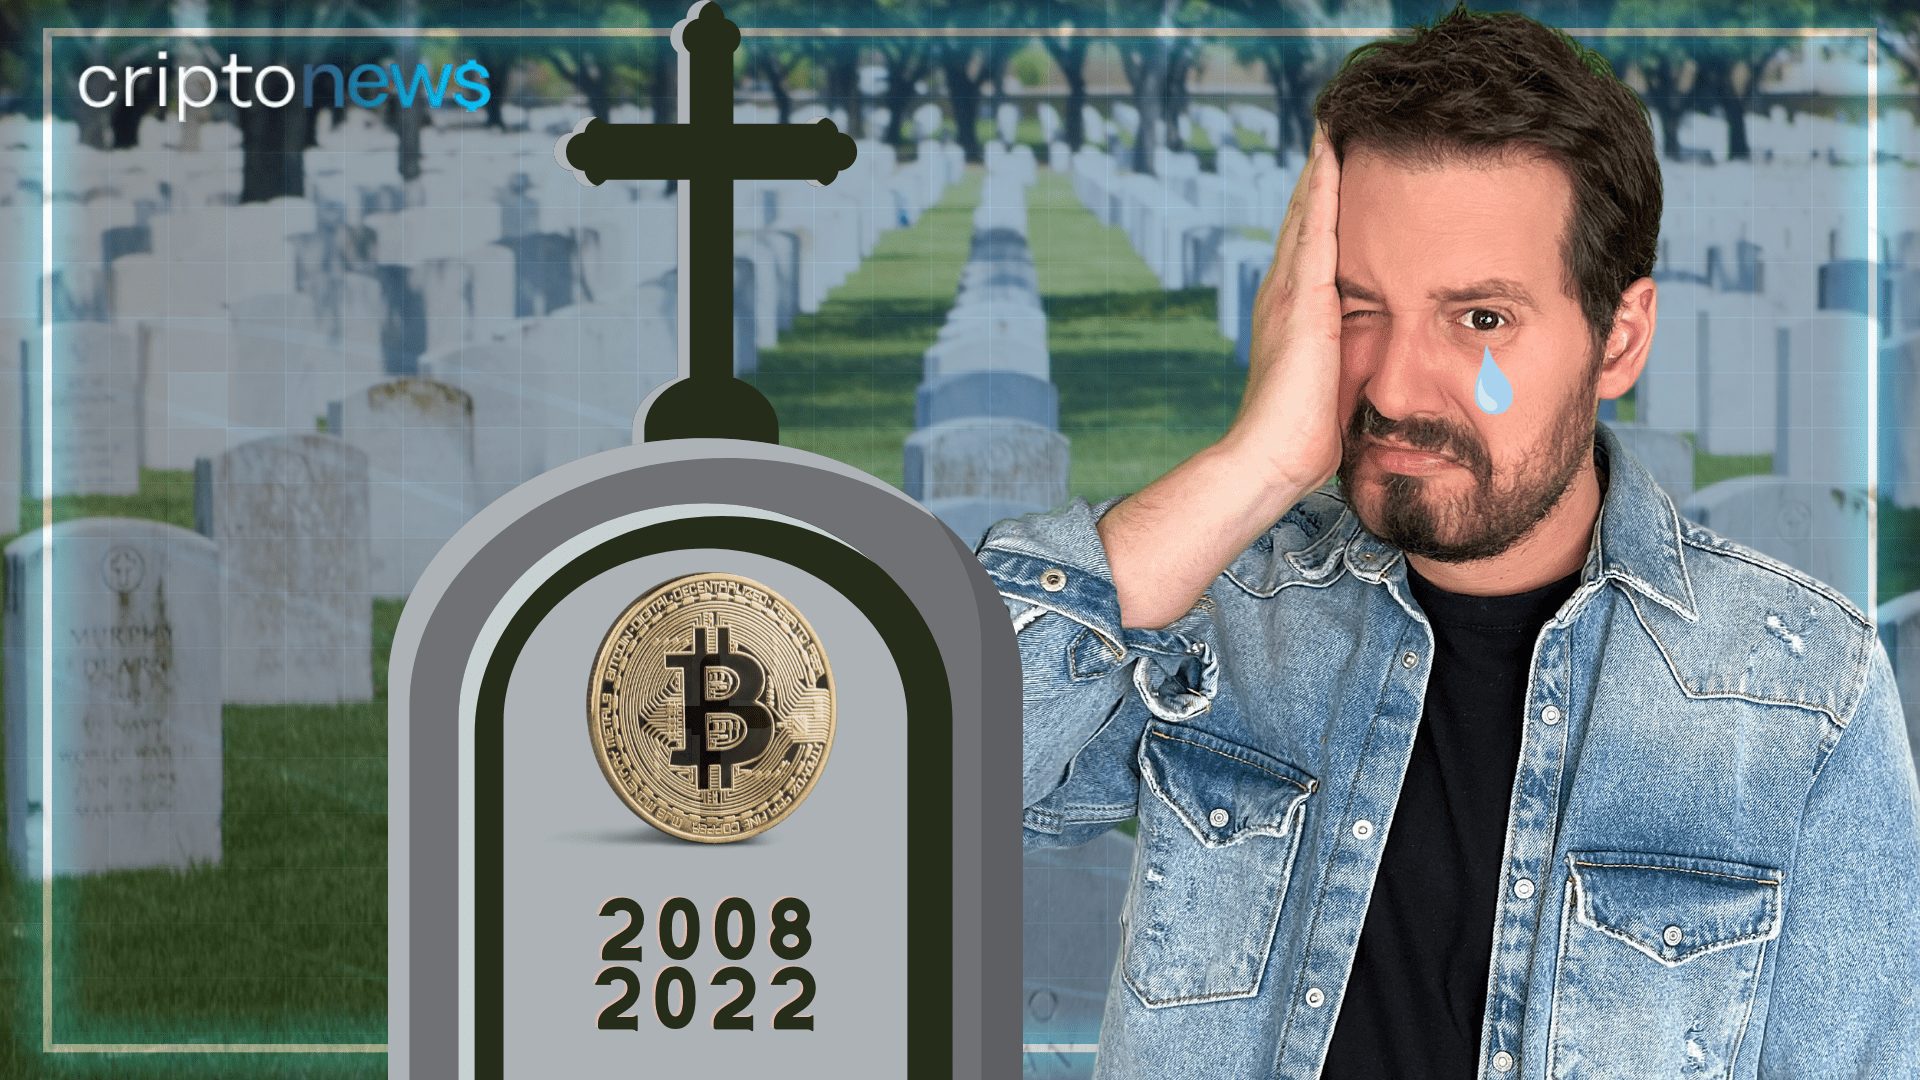 Dony De Nuccio em um cemitério perguntando se é a morte do bitcoin